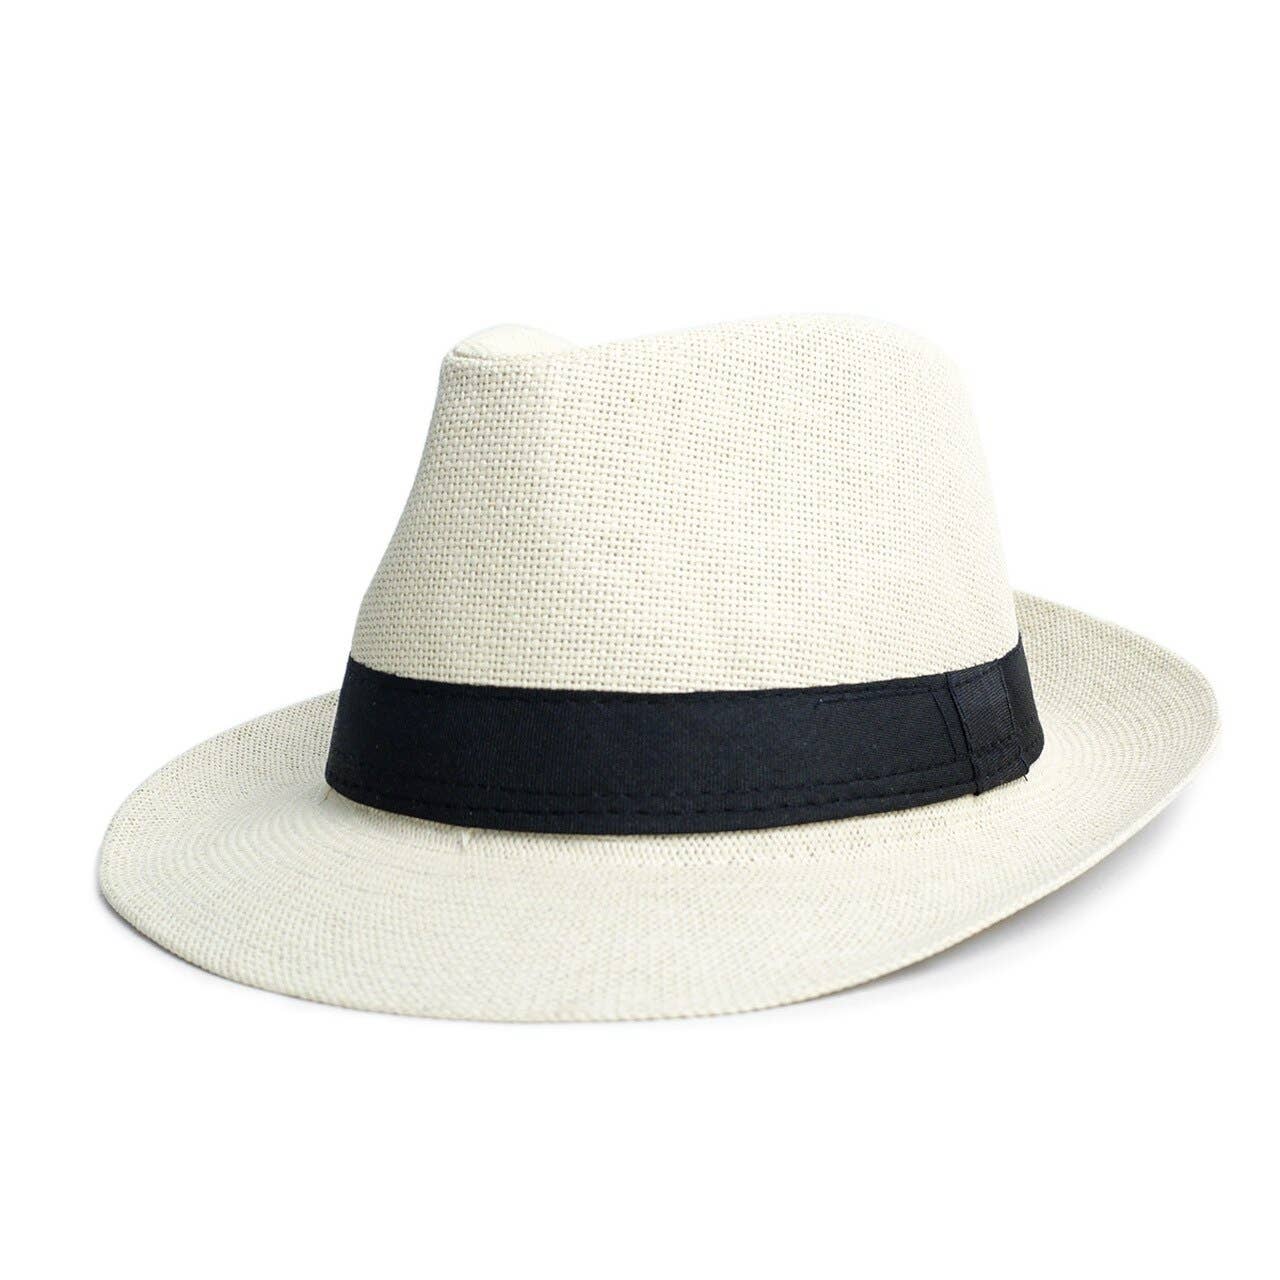 Spring/Summer Wide Brim Fedora Hat: S/M / Black